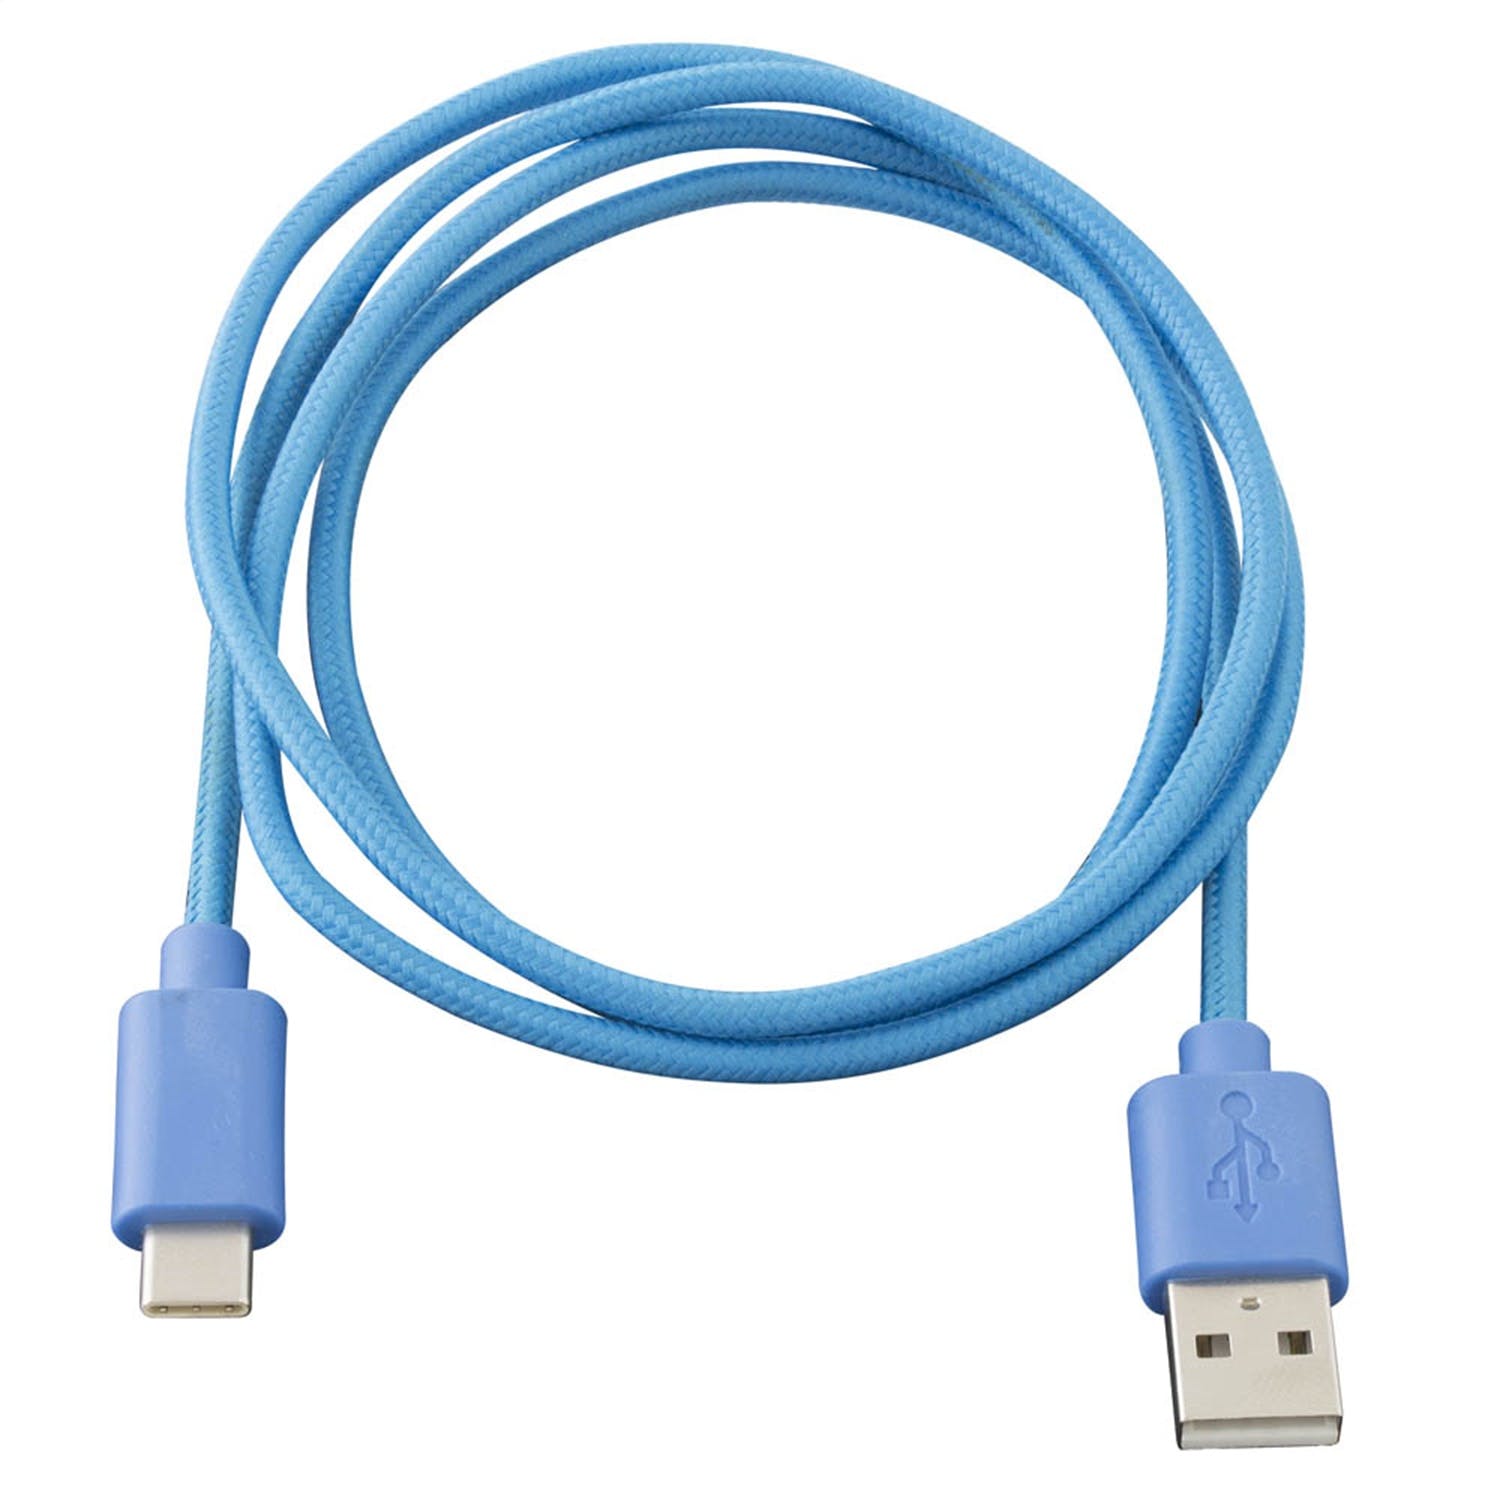 Metra Electronics AXUSBC-BL USB Type C Cable